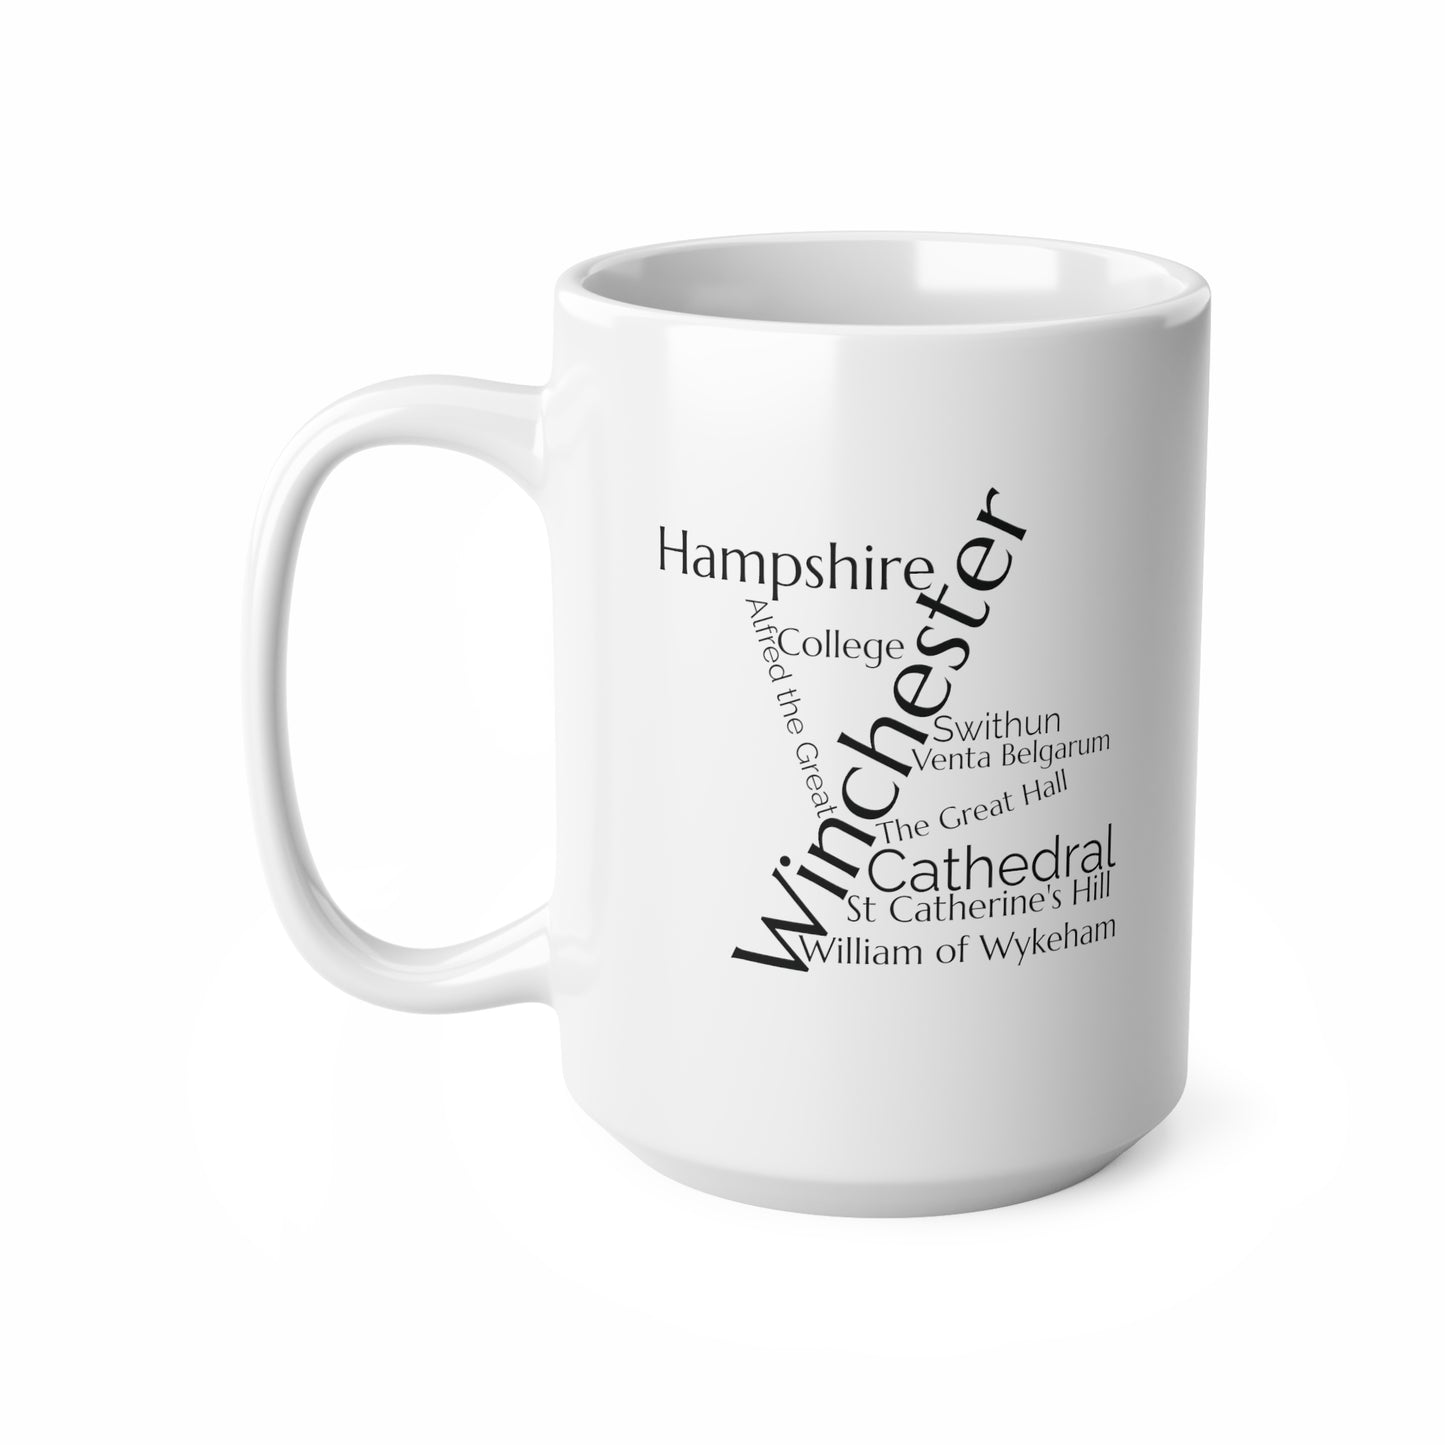 Winchester word mug, local mug, geography mug, gift, mug, coffee cup, word mug, wordcloud mug, christmas gift, birthday gift